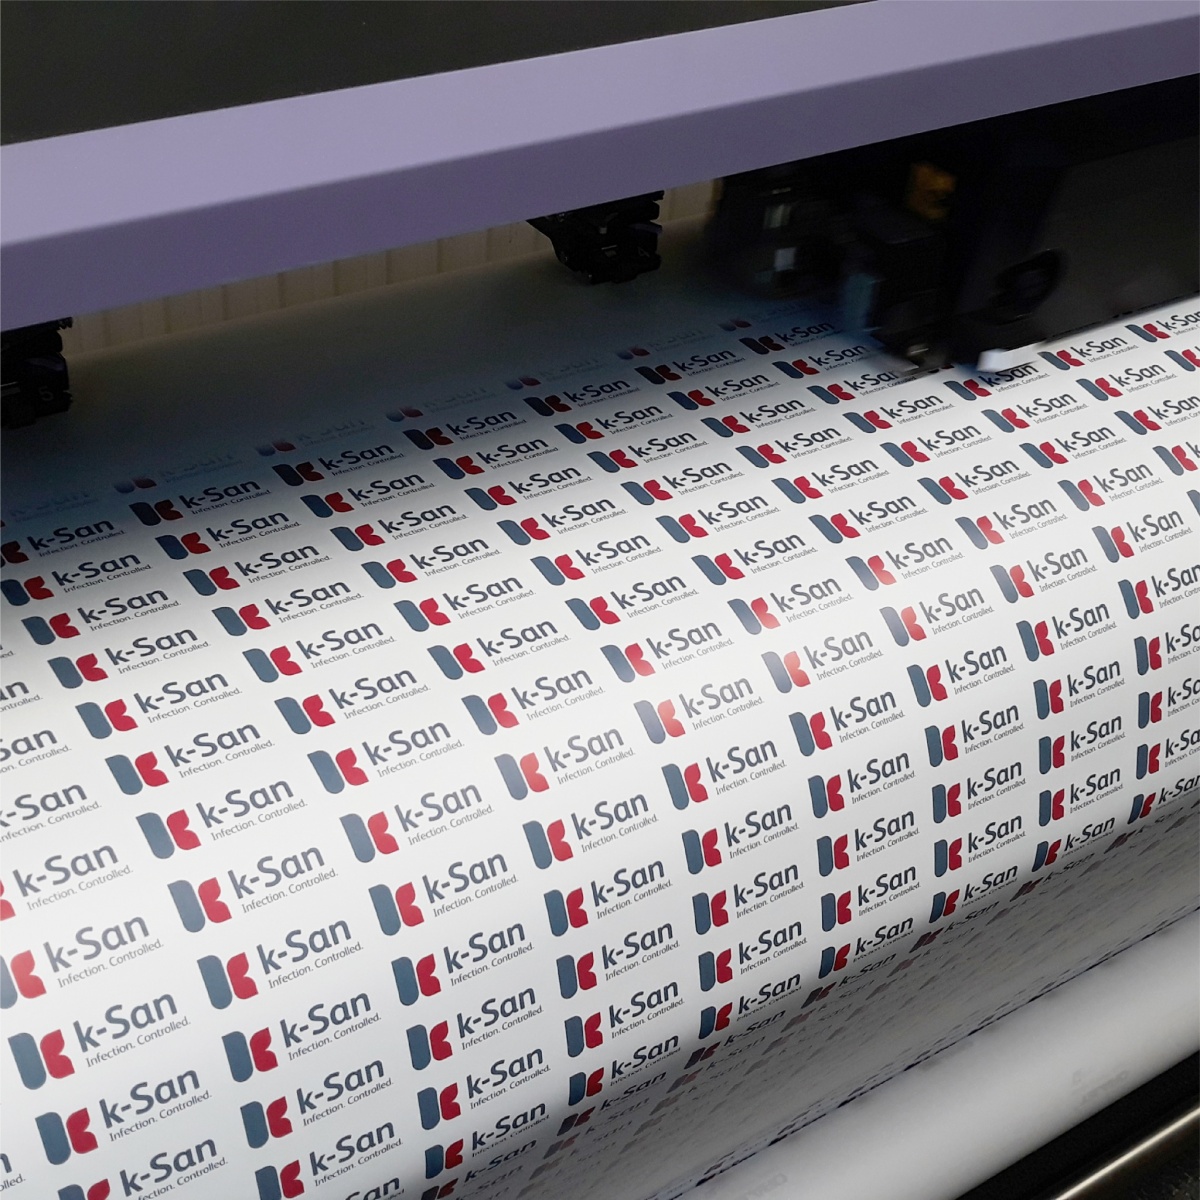 labels being printed